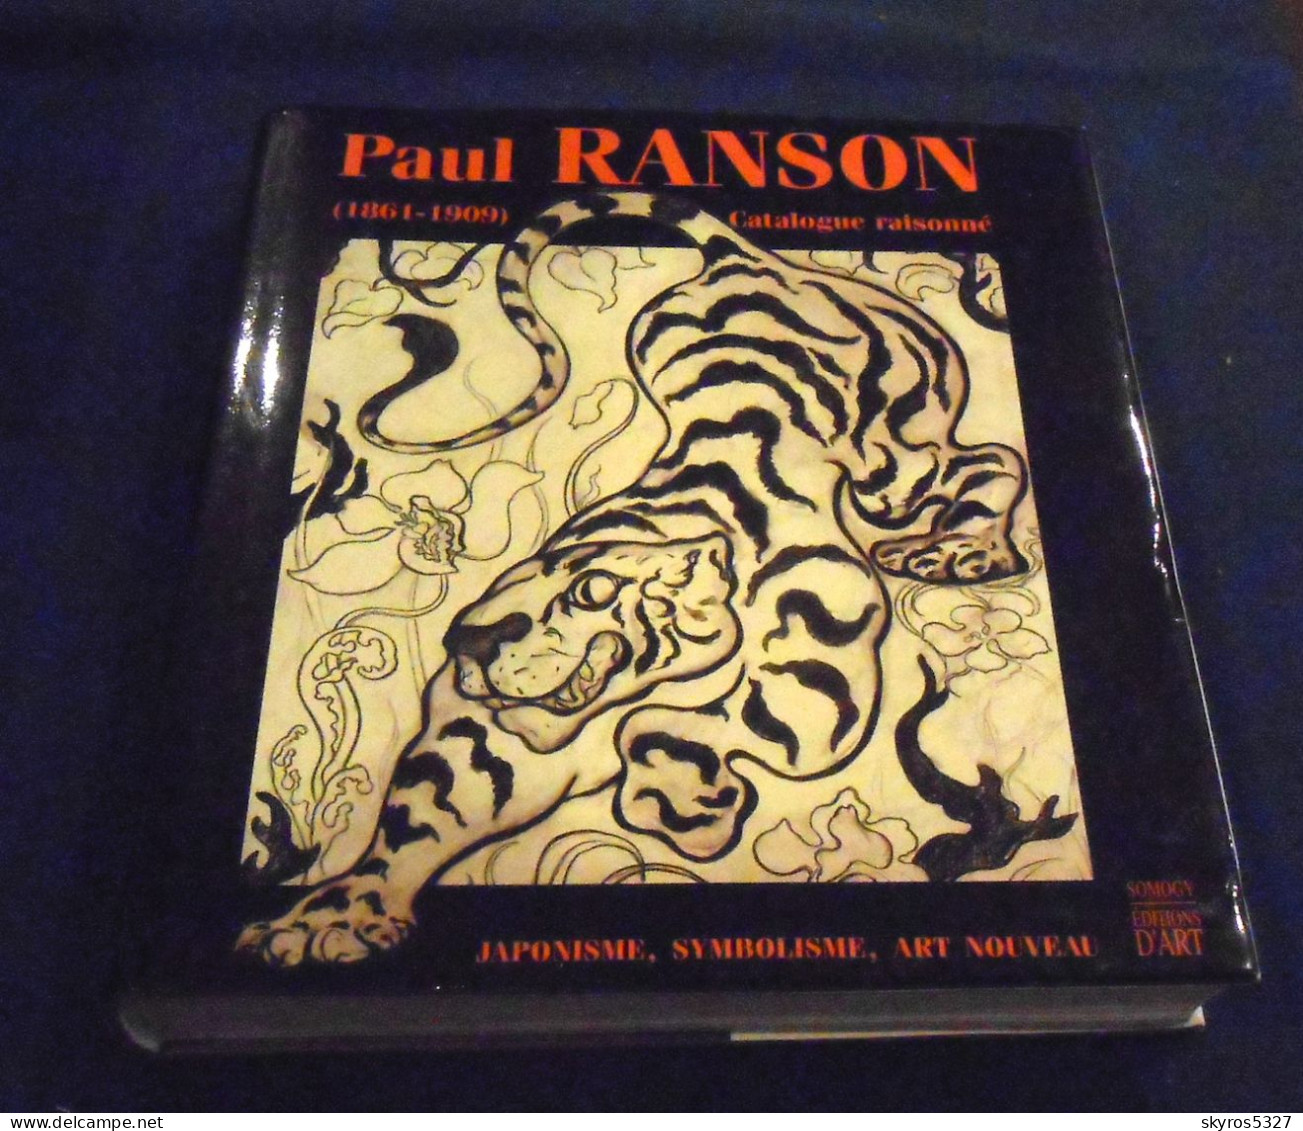 Paul Ranson (1861 – 1909) Catalogue Raisonné – Japonisme – Symbolisme – Art Nouveau - Art